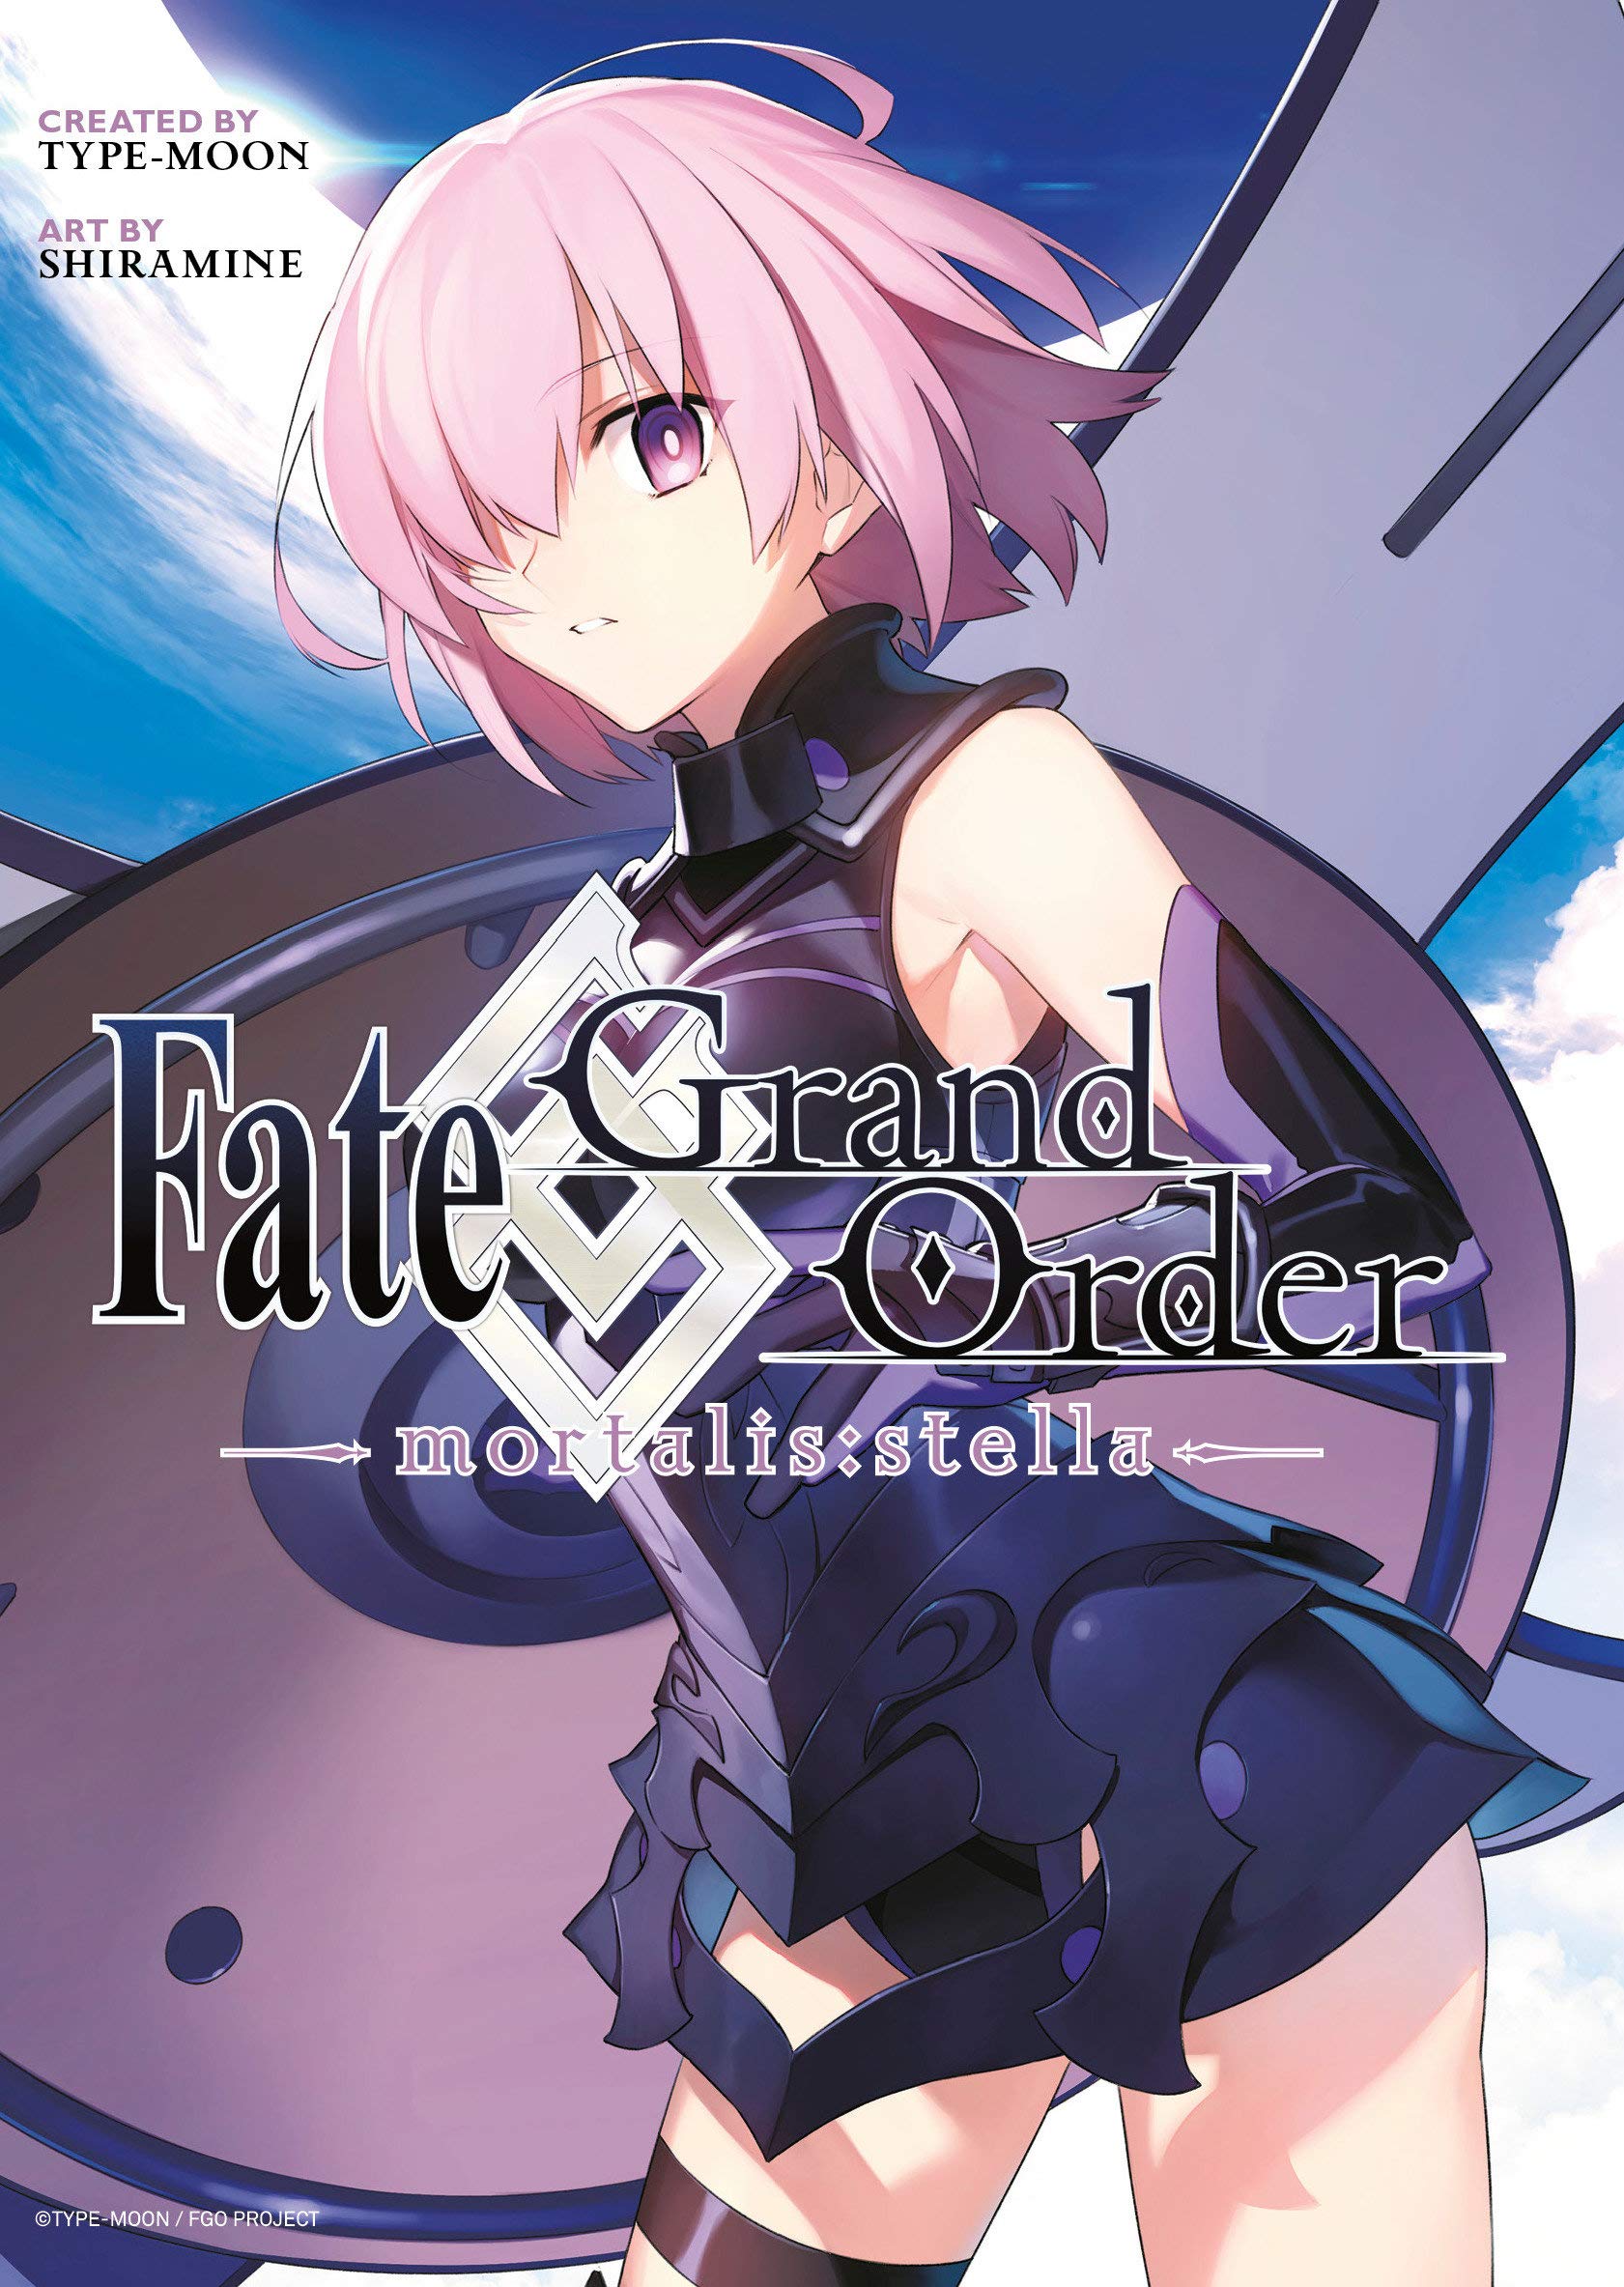 Fate/Grand Order -Mortalis: Stella- Vol. 01